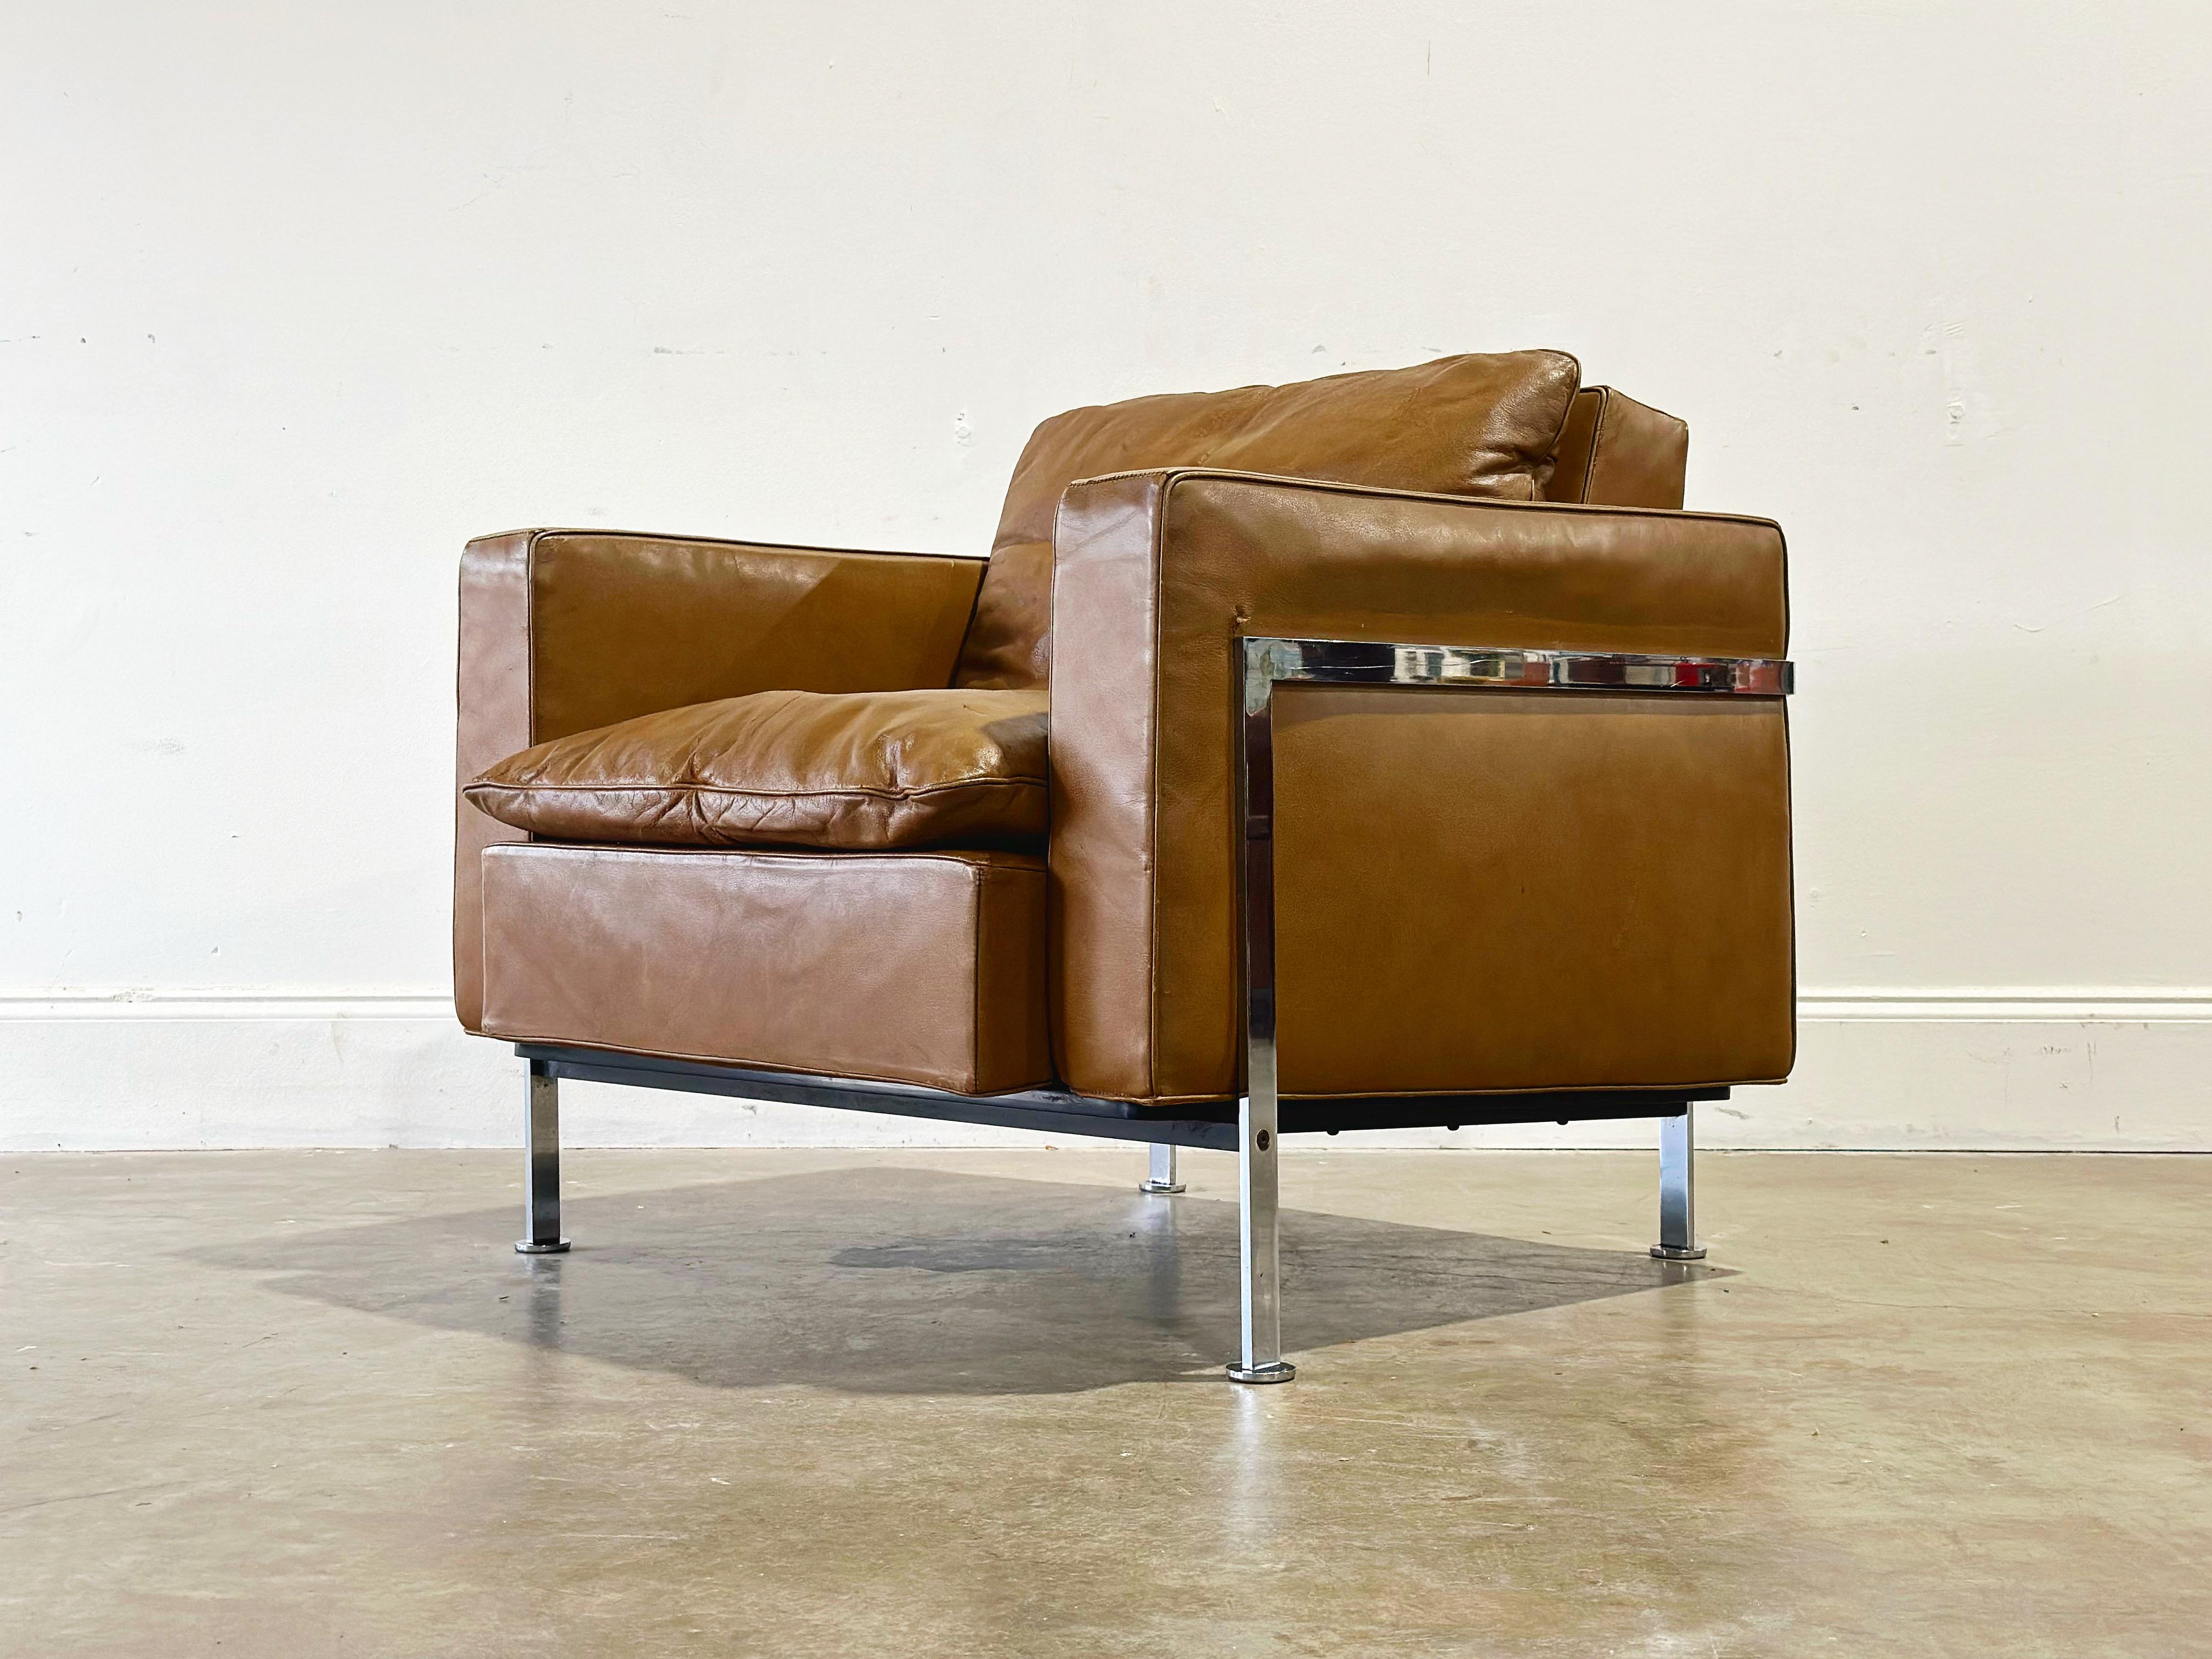 Exquise chaise de salon modèle RH302 conçue par Robert Haussmann. Construit par De Sede en Suisse et importé aux États-Unis par Stendig vers 1960. Ce modèle ne fait pas souvent surface aux États-Unis. Cadre en acier chromé et coussins en cuir